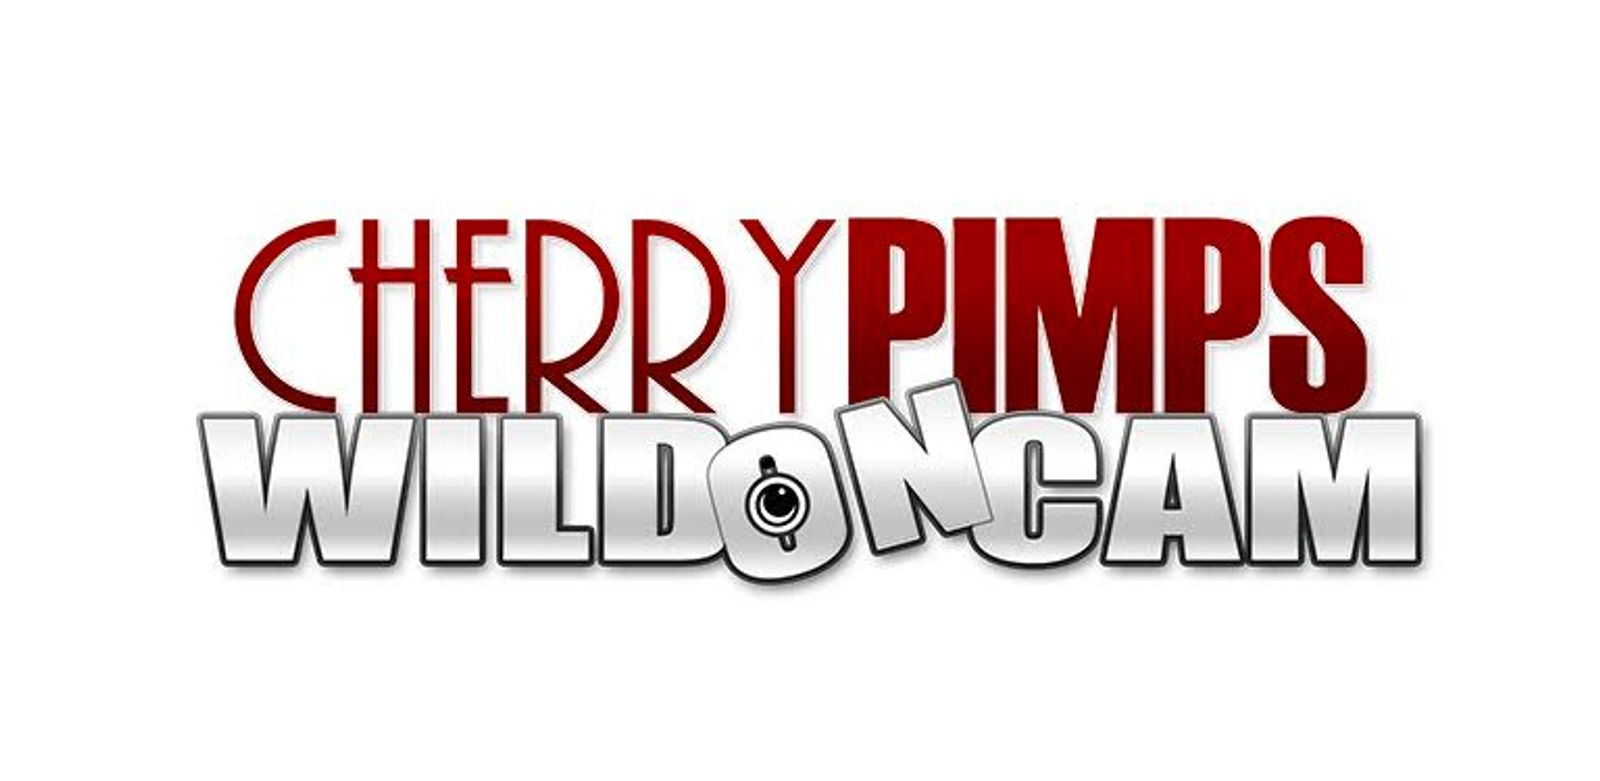 Cherry Pimps WildOnCam Announces Five Red Hot Shows